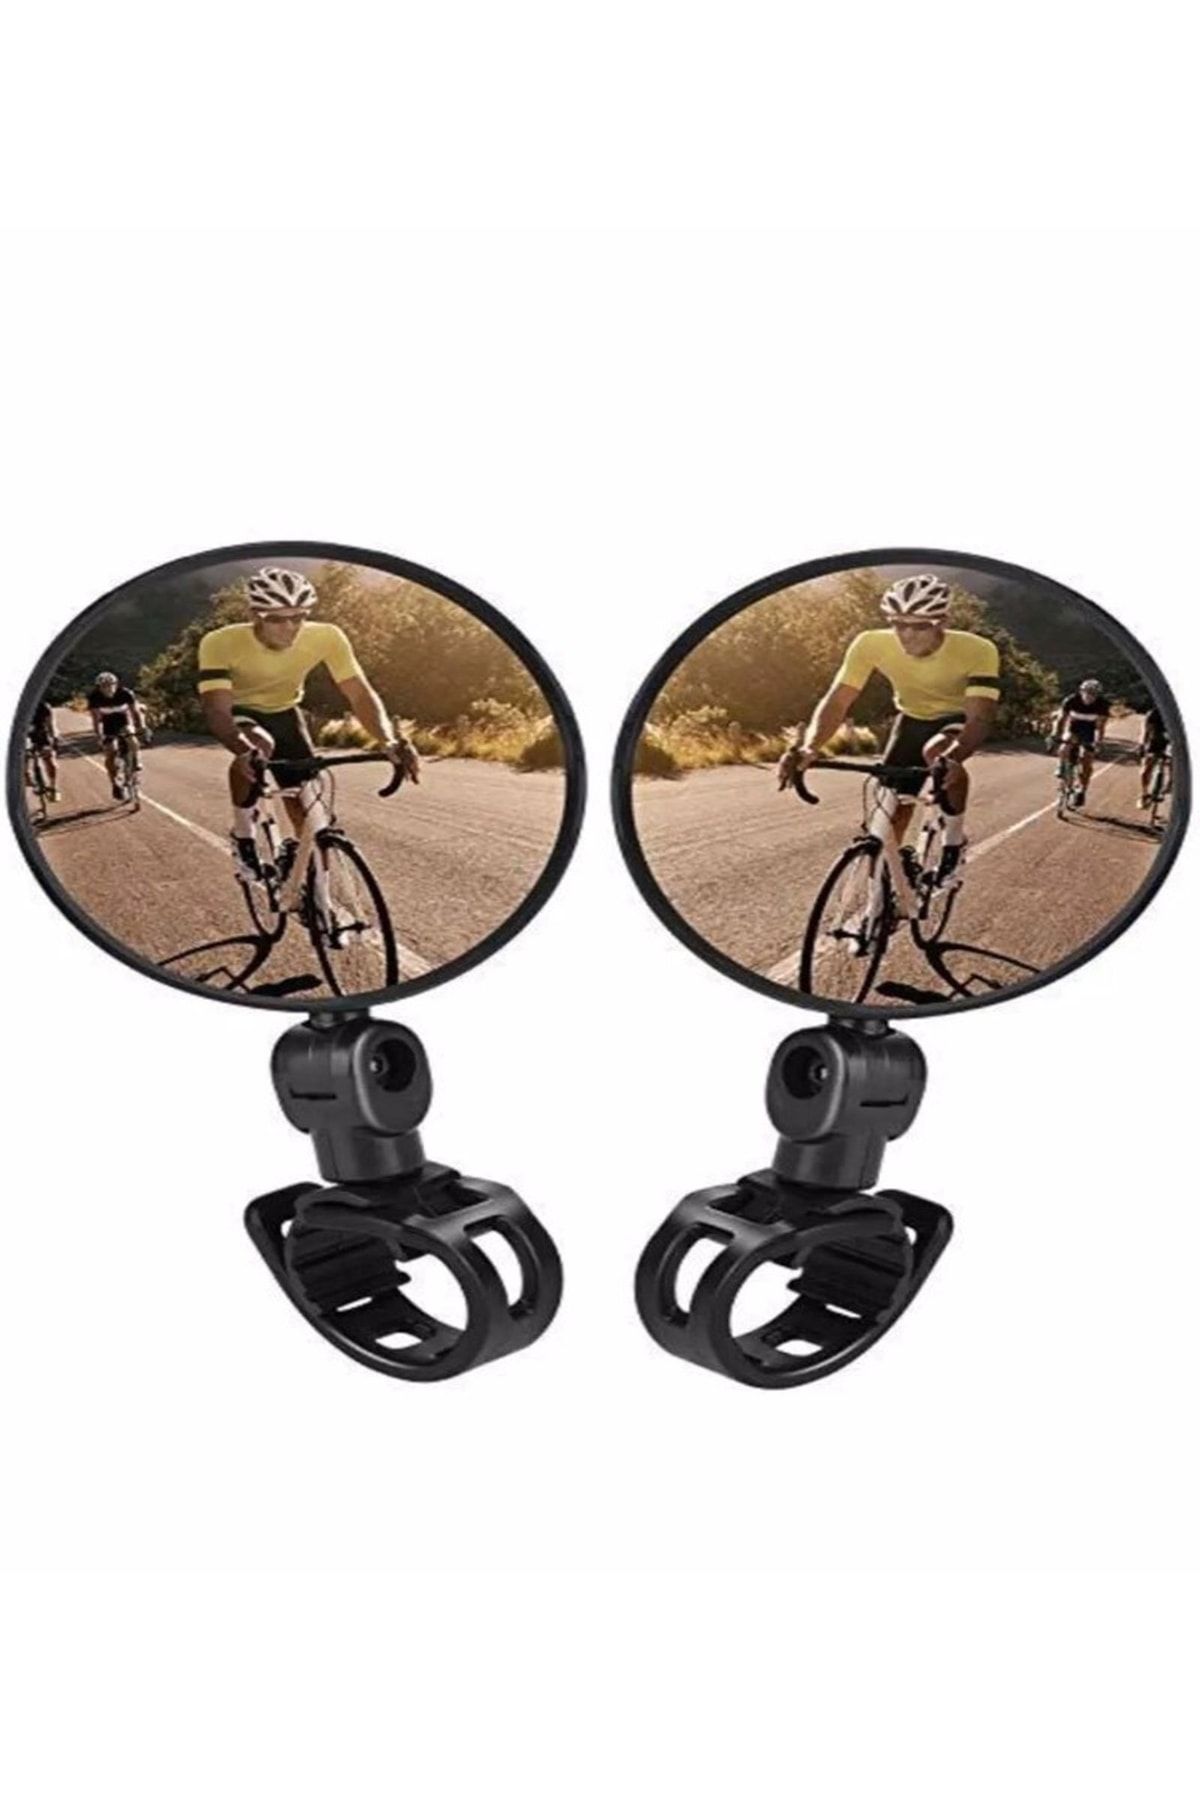 Özasya AVM Bisiklet Aynası Geniş Açılı Bisiklet Scooter Dikiz Aynası ( 2 Adet )